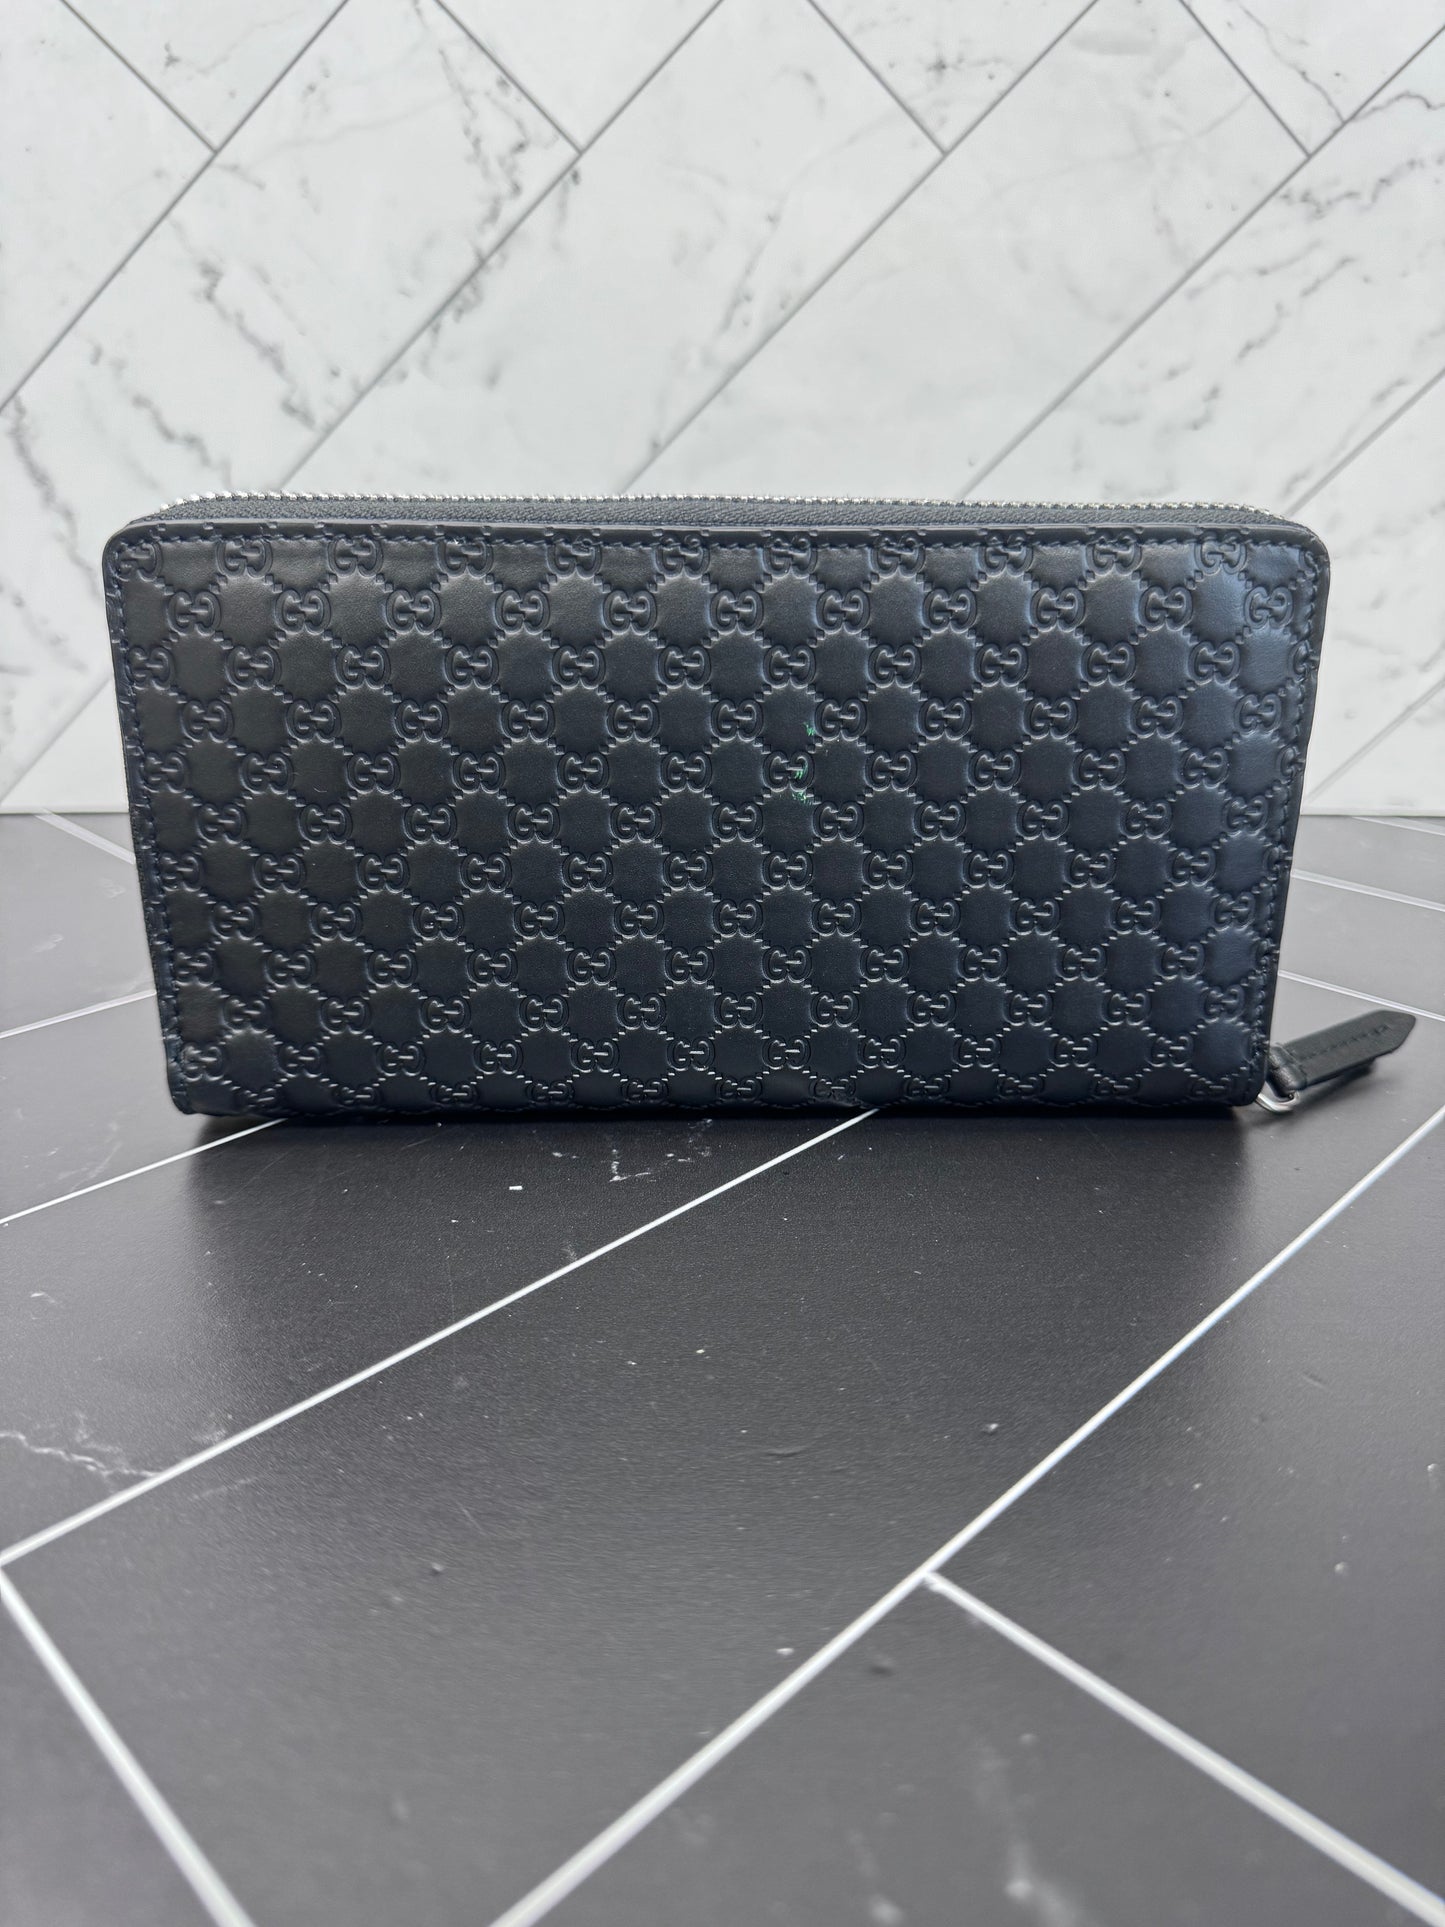 BRAND NEW- Gucci Black Micro Guccisima Zippy Wallet